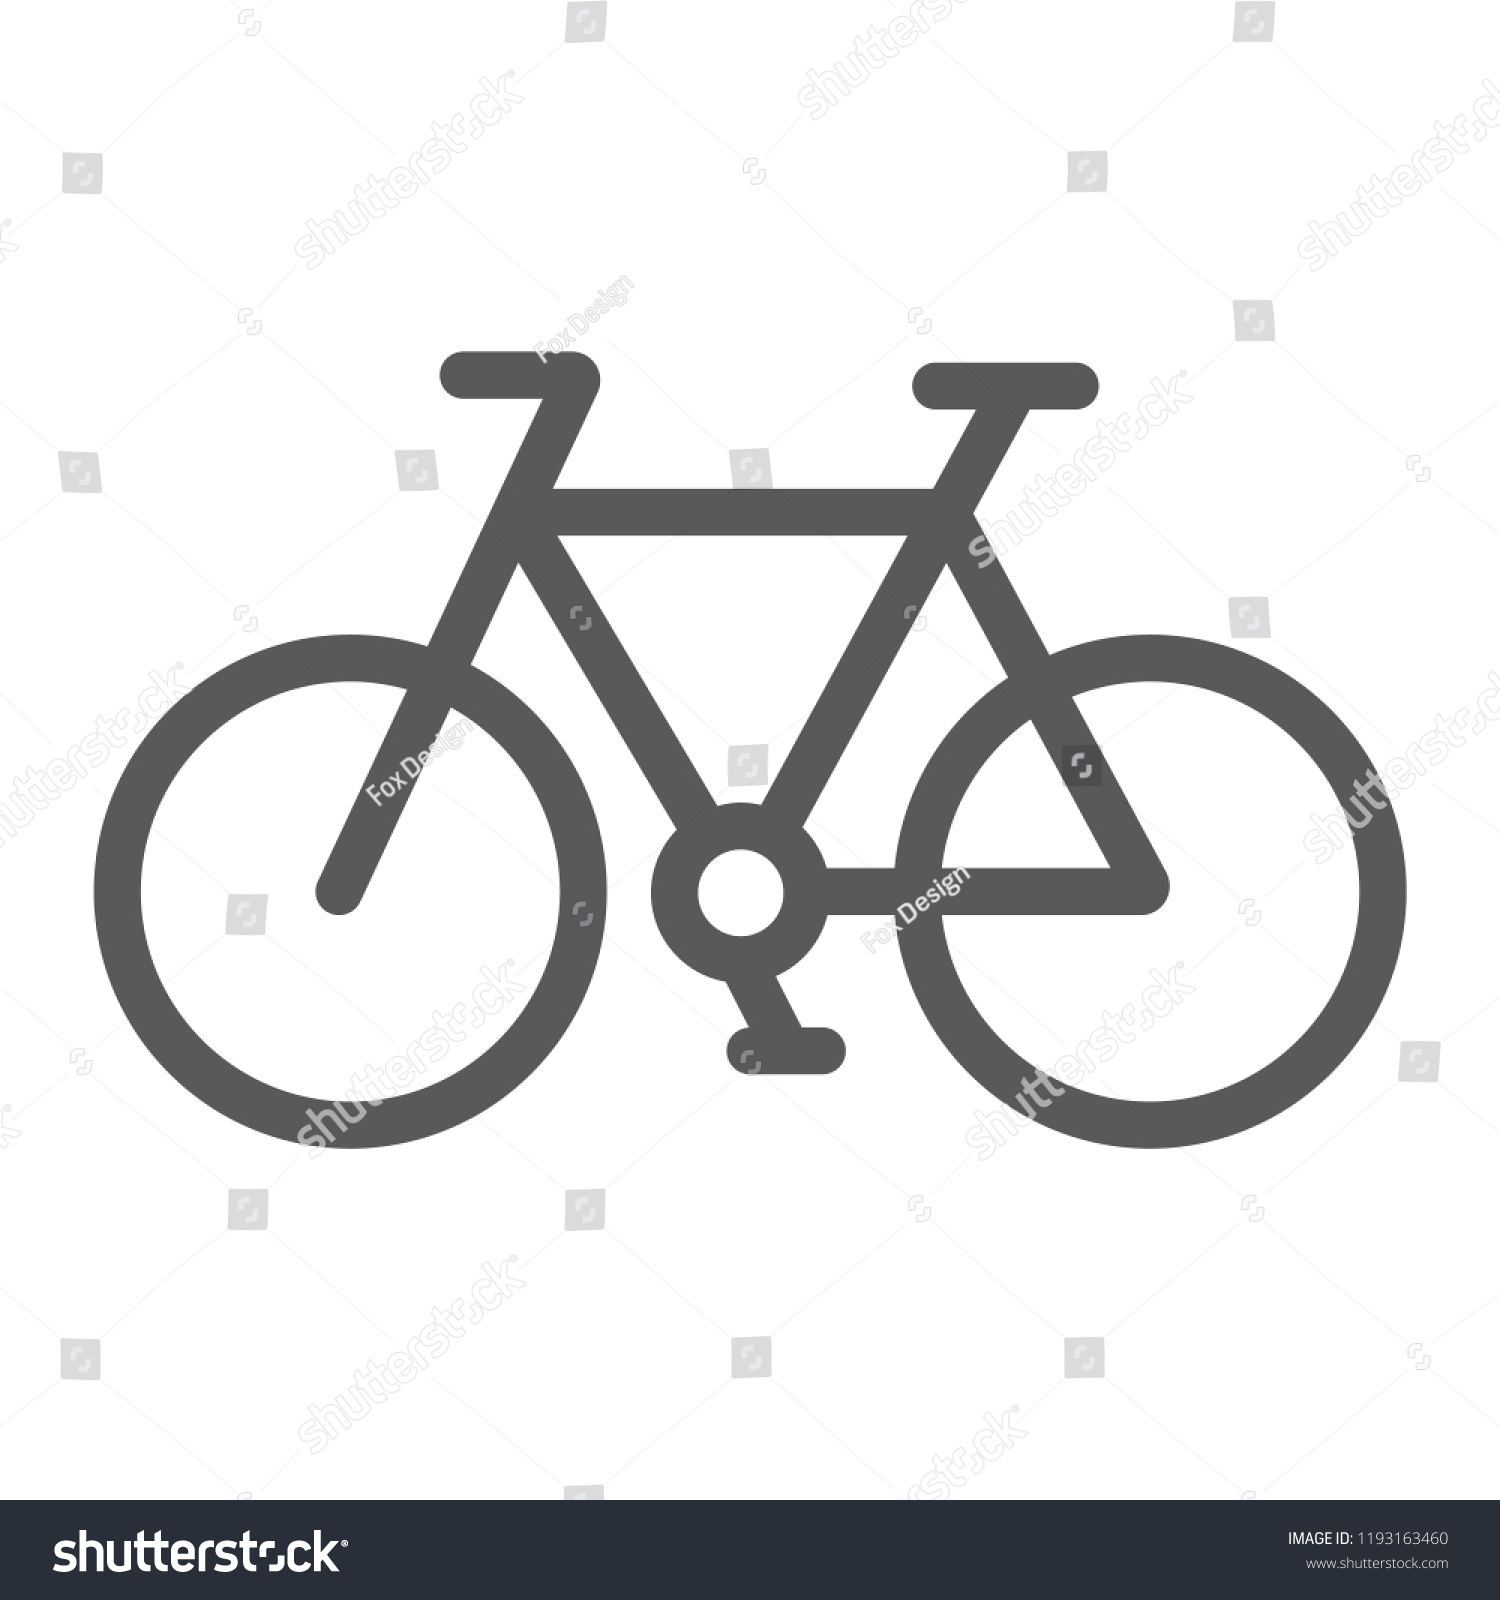 sport bike cycle